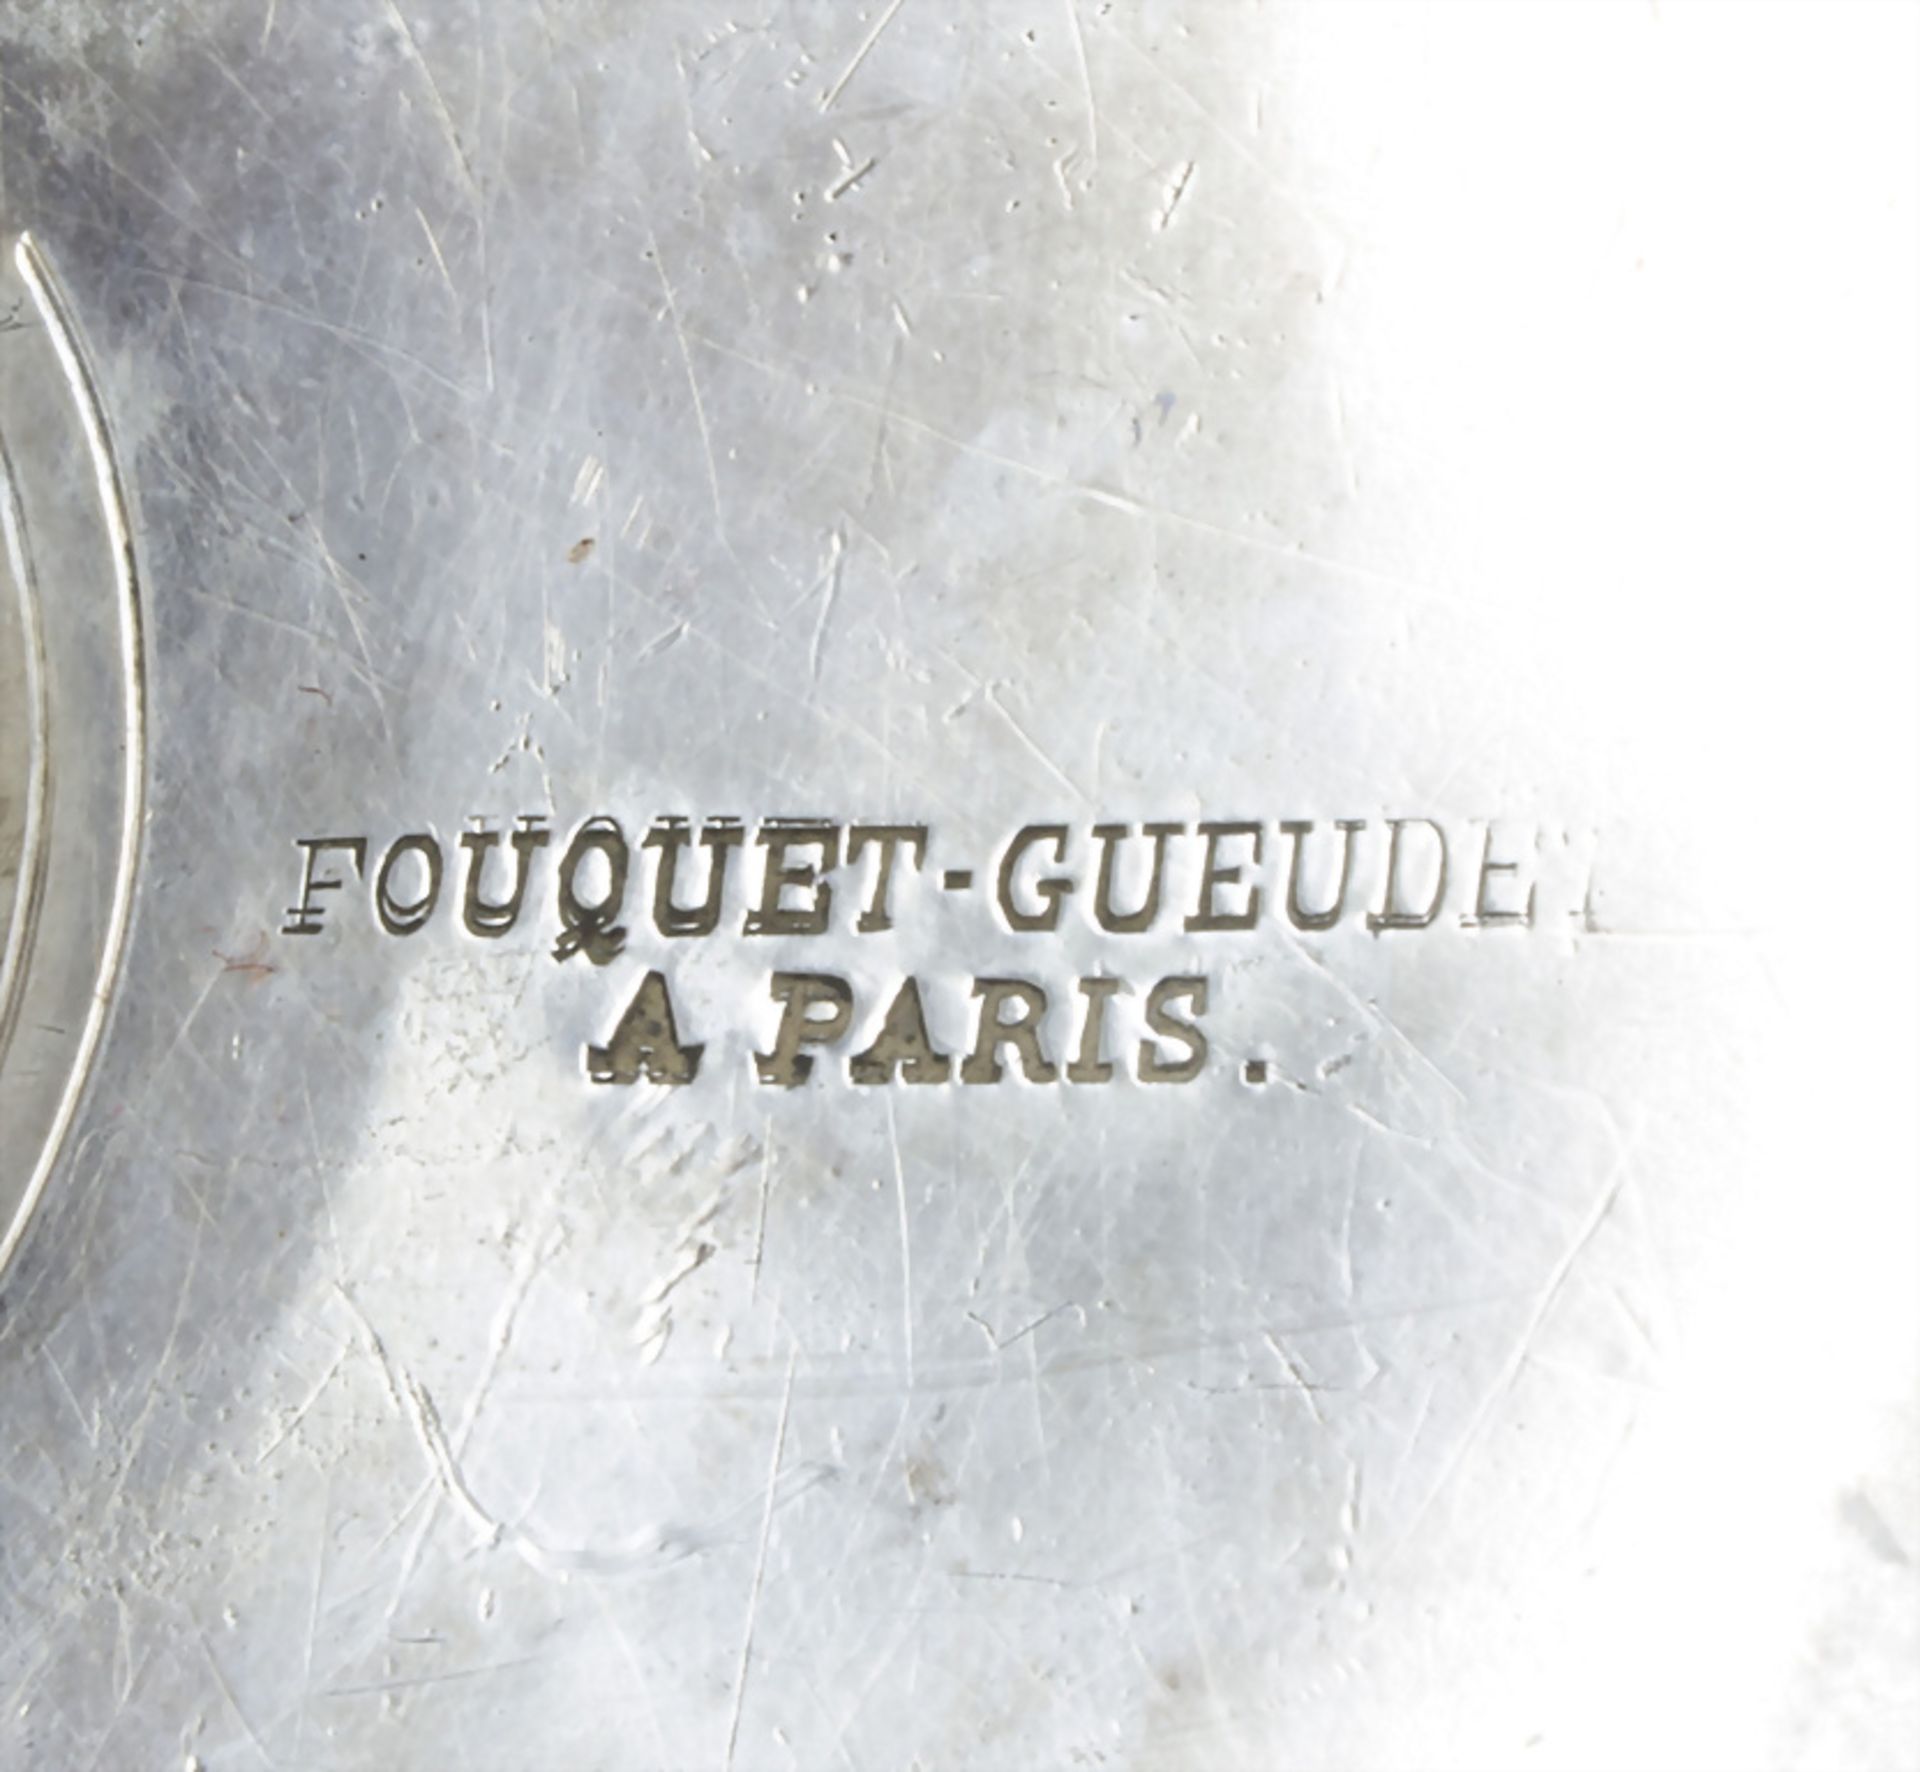 Sauciere auf Presentoir / A silver sauce boat on presenter, Fouquet-Geuedet, Paris, um 1900 - Bild 9 aus 10